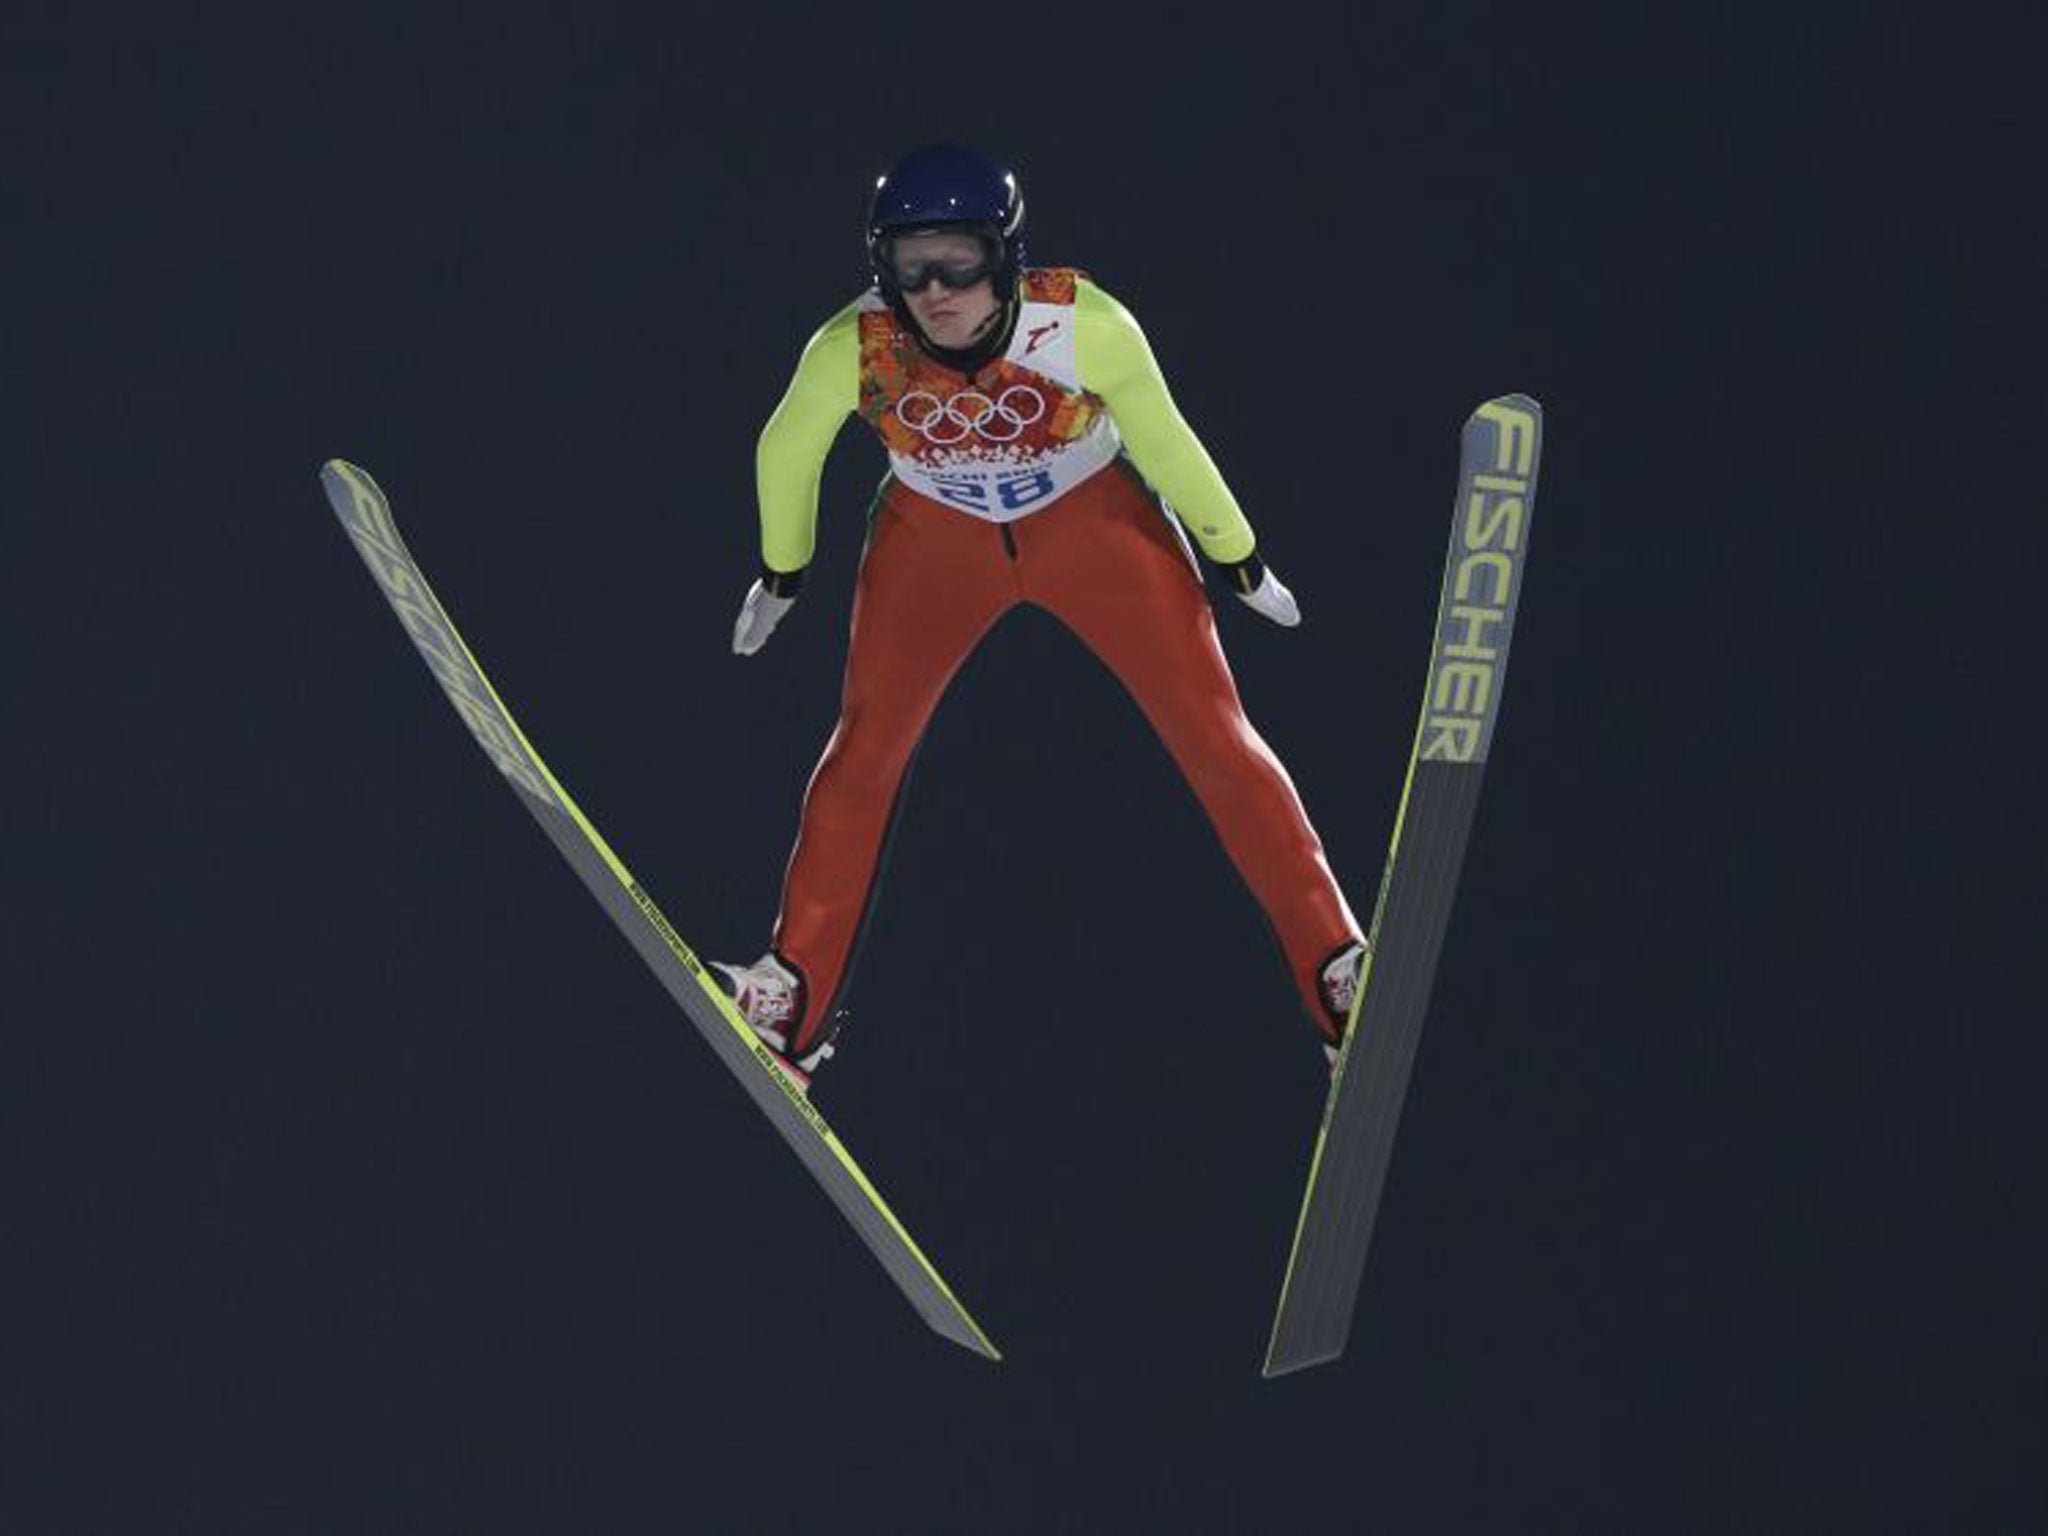 Daniela Iraschko-Stolz, ski jumper